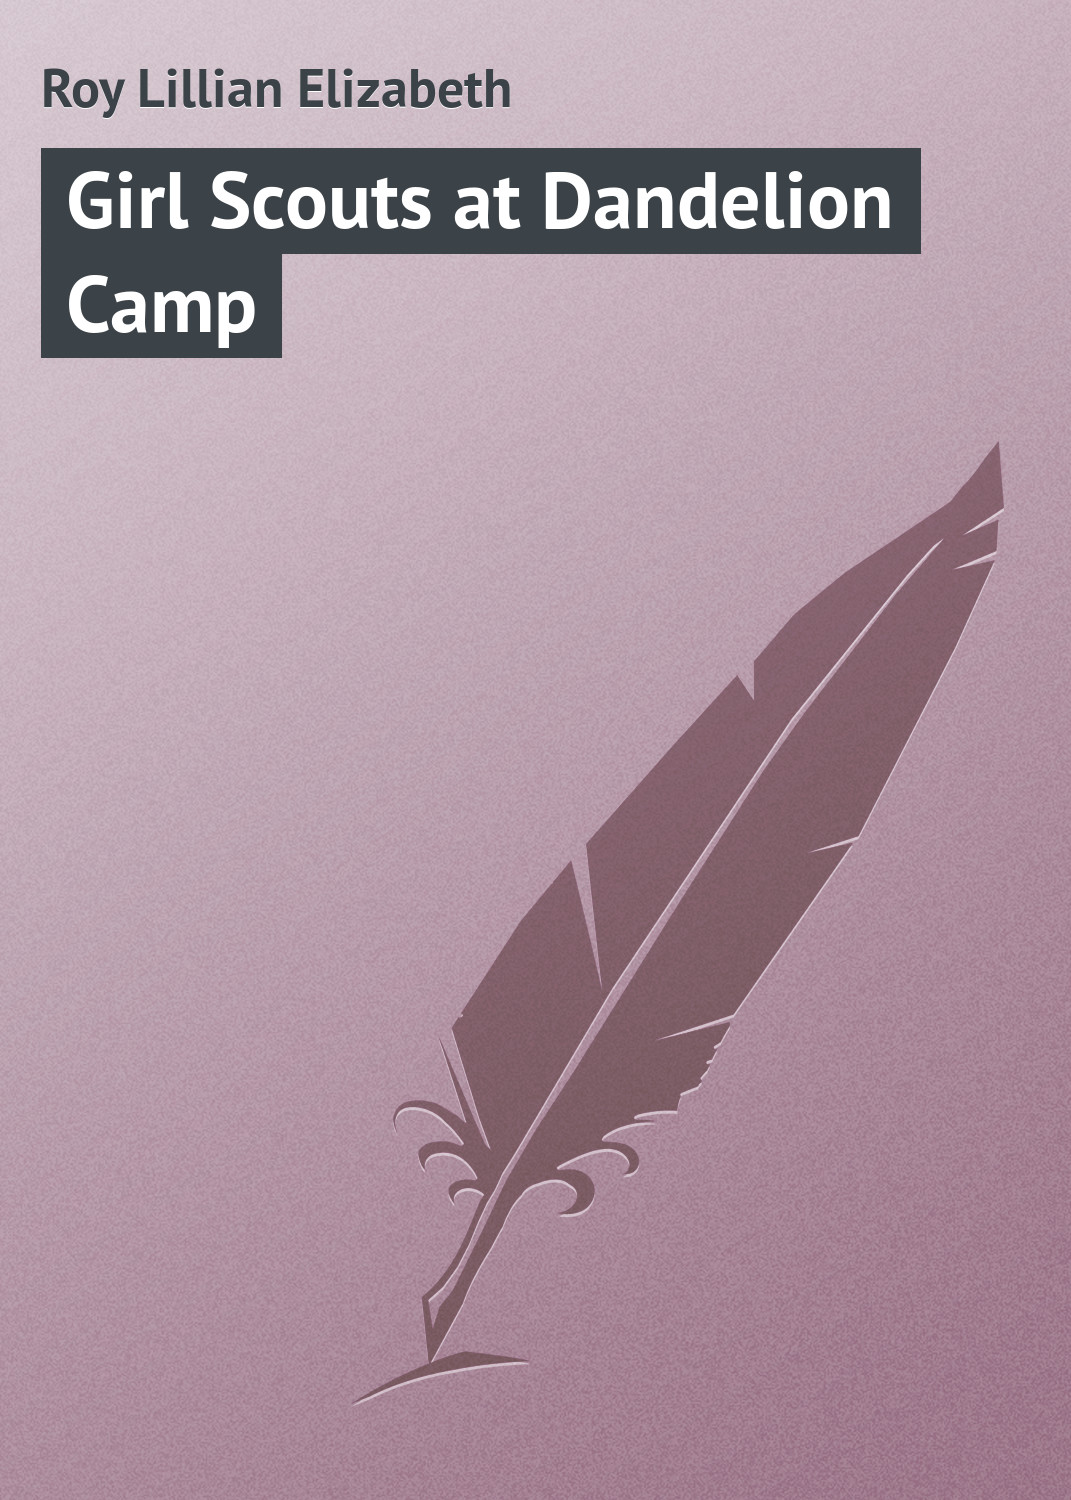 Книга Girl Scouts at Dandelion Camp из серии , созданная Lillian Roy, может относится к жанру Зарубежная классика, Зарубежные детские книги. Стоимость электронной книги Girl Scouts at Dandelion Camp с идентификатором 23148923 составляет 5.99 руб.